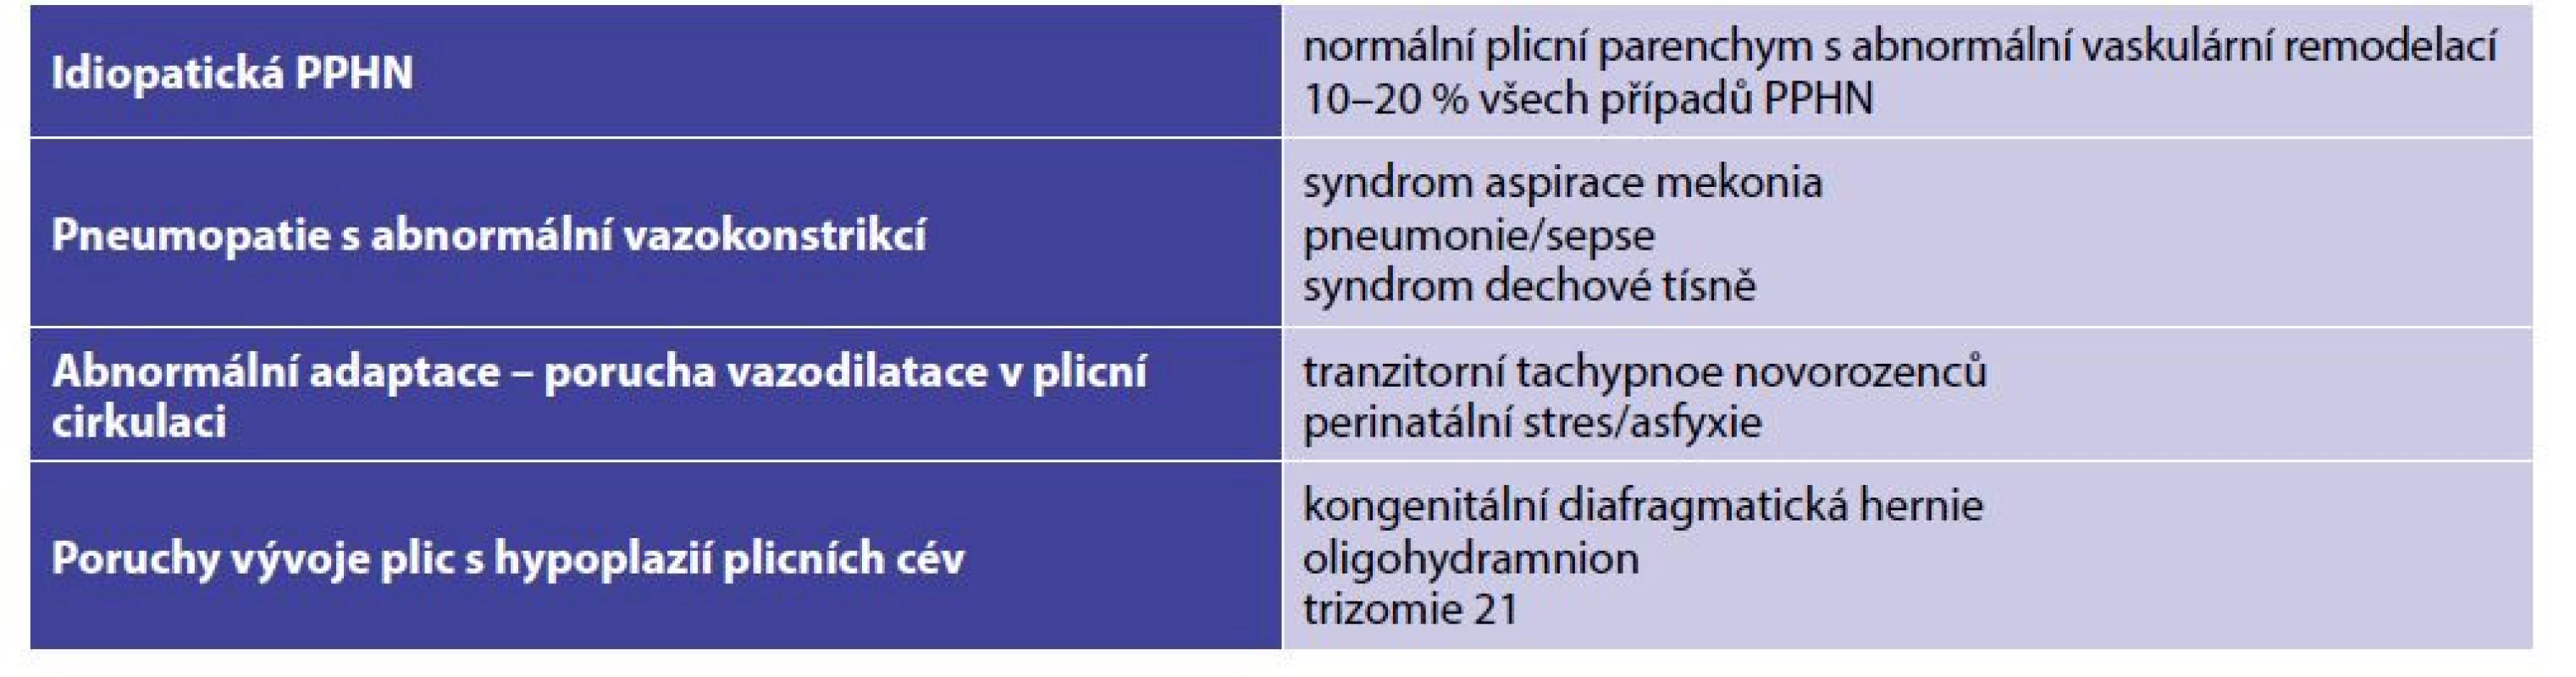 Etiologie perzistující plicní hypertenze u novorozenců (PPHN)